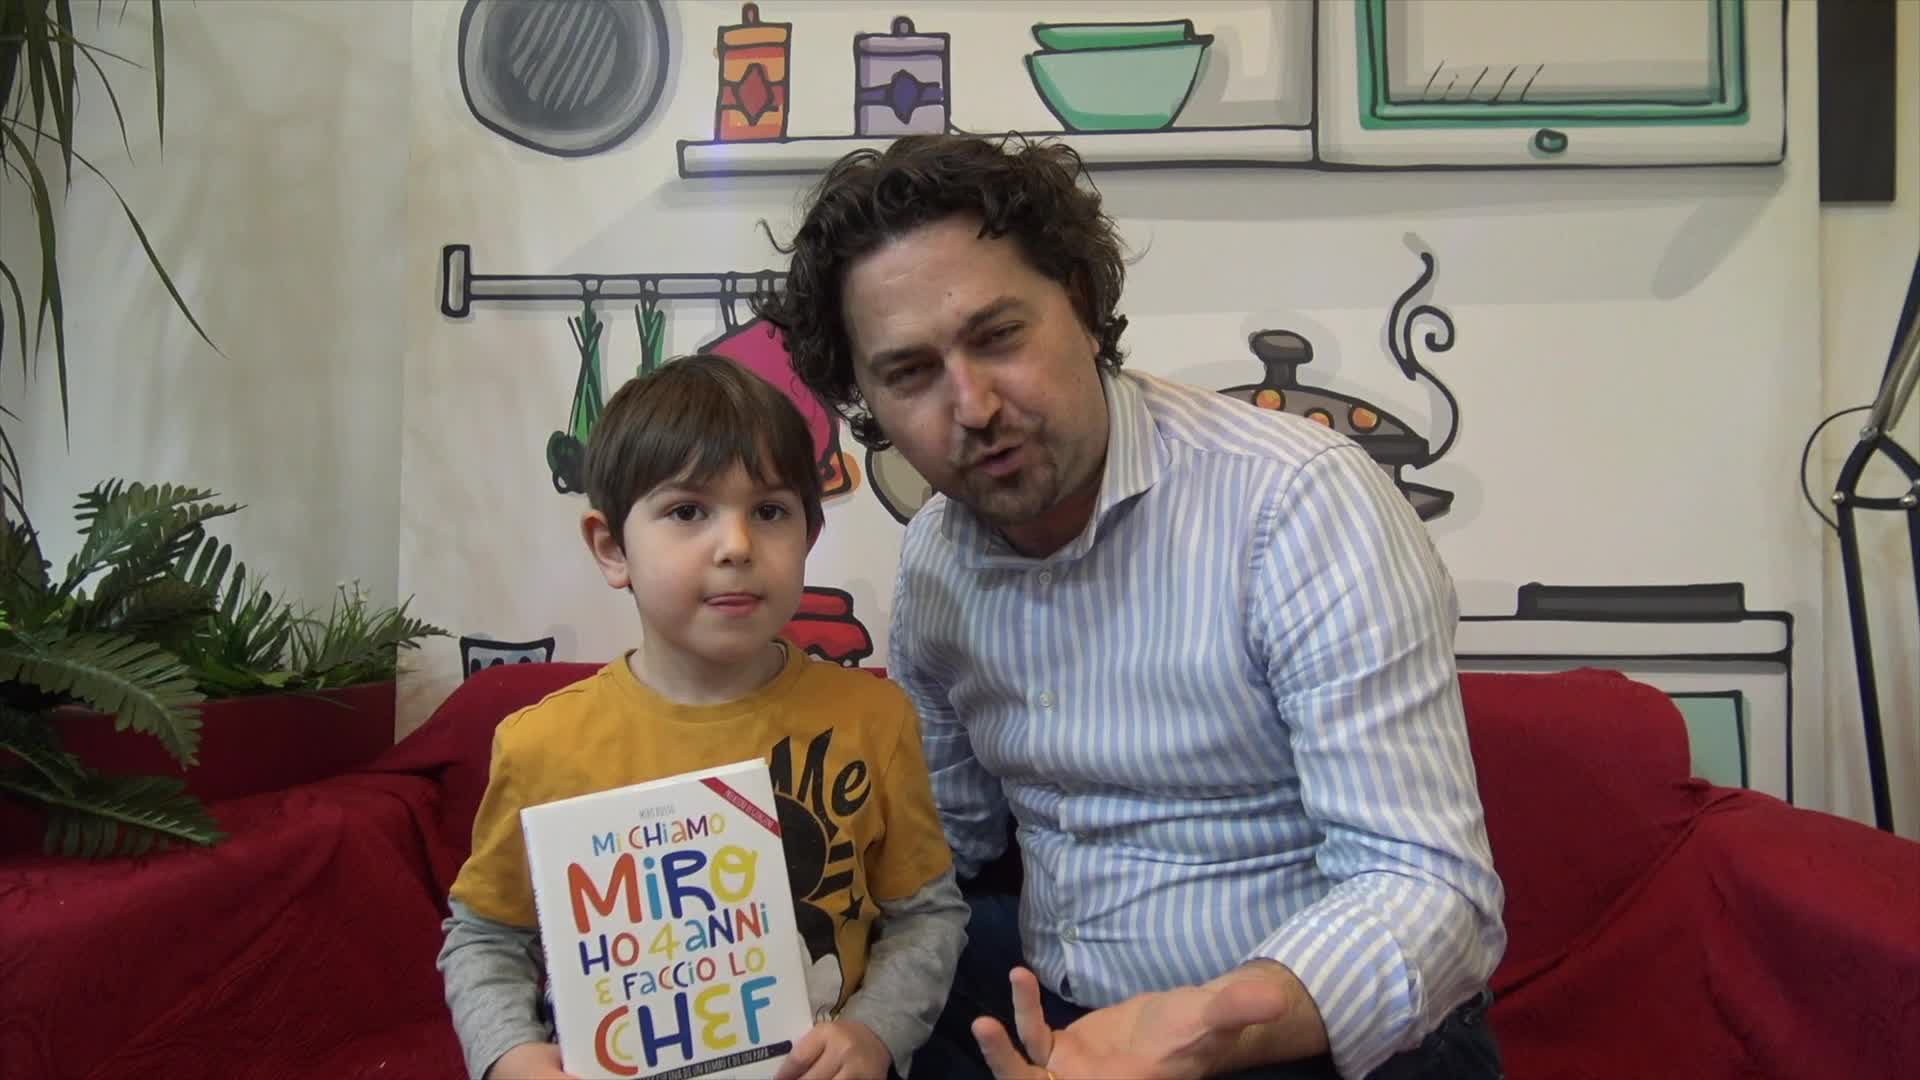 "Mi chiamo Miro ho quattro anni e faccio lo Chef": ricette strambe ma edibili di un bambino